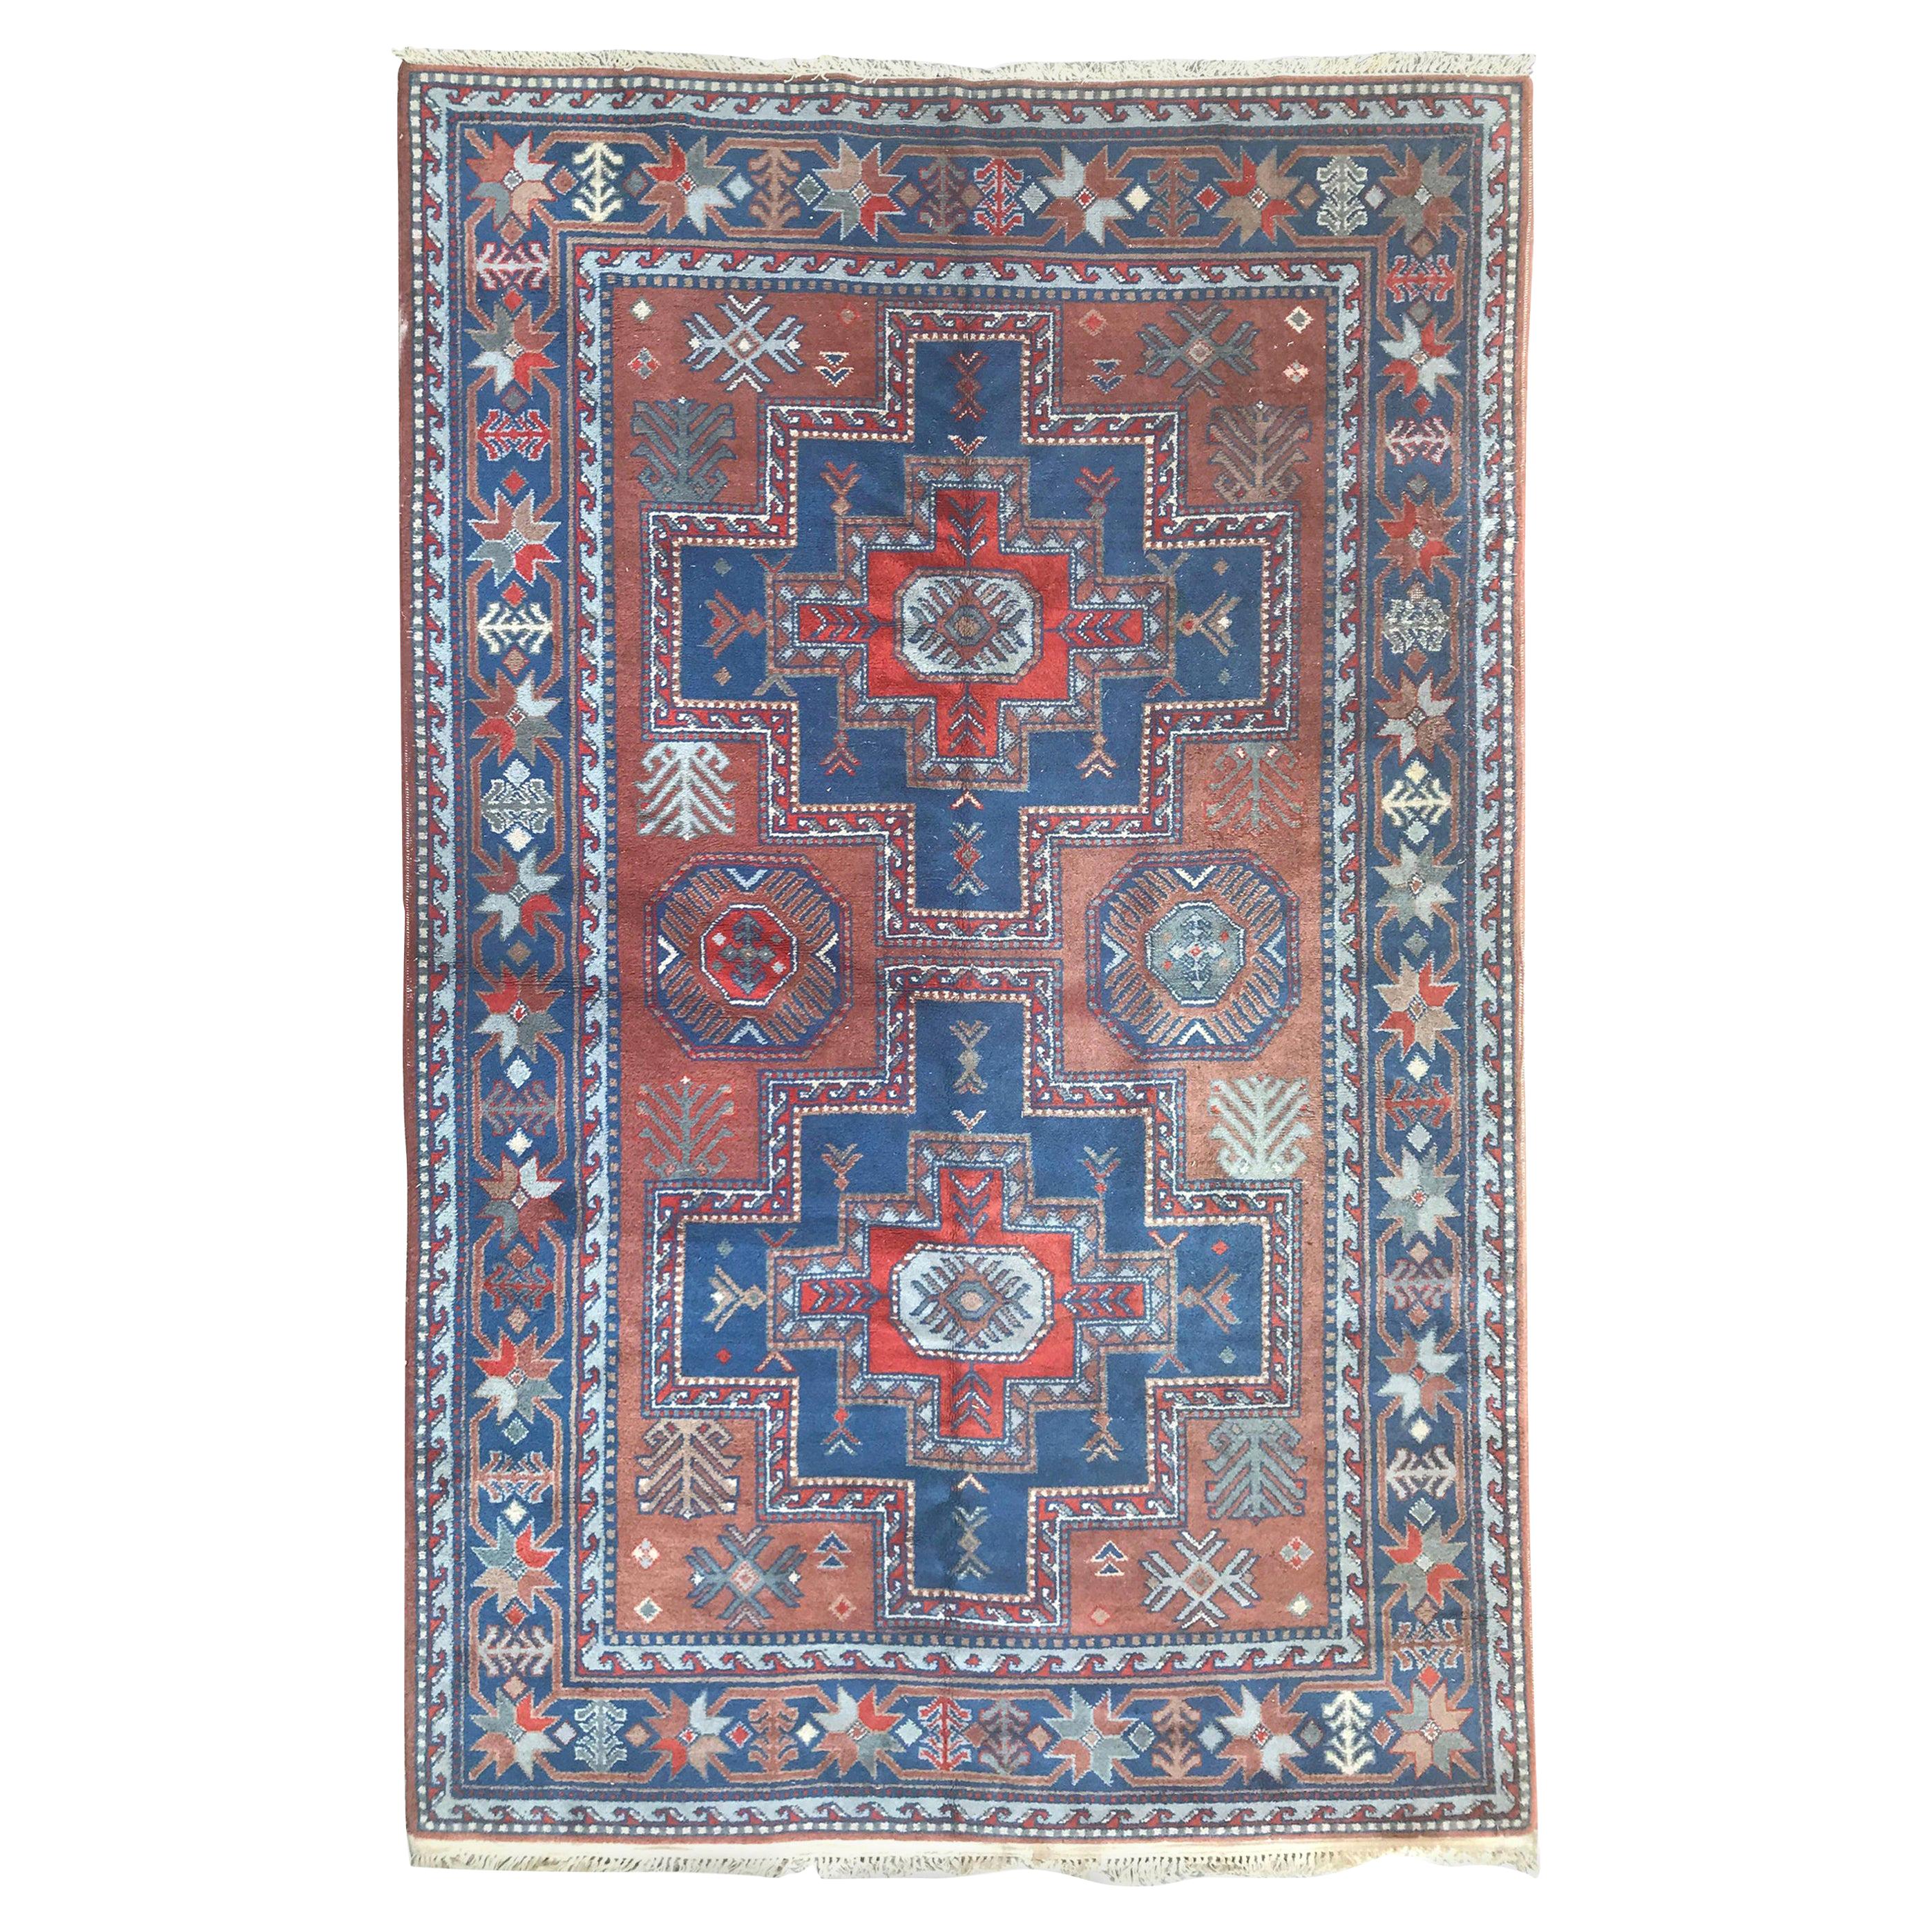 Schöner Vintage-Teppich im Kazak-Stil von Sinkiang